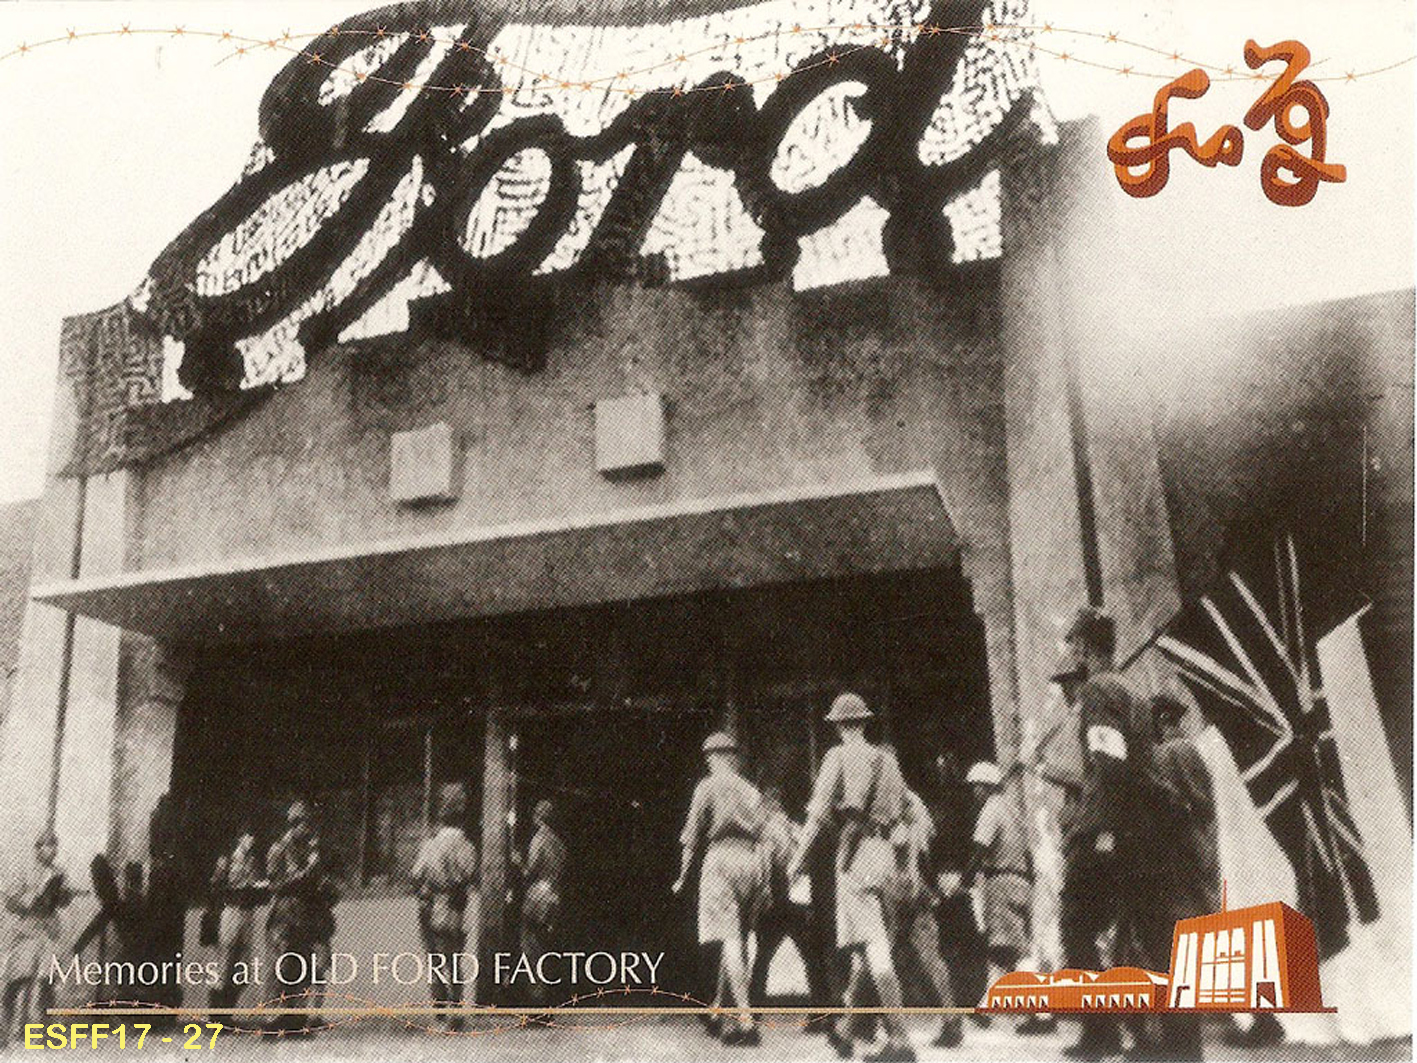 27 - Cartolina giapponese d'epoca per la resa britannica alla Old Ford Factory.jpg